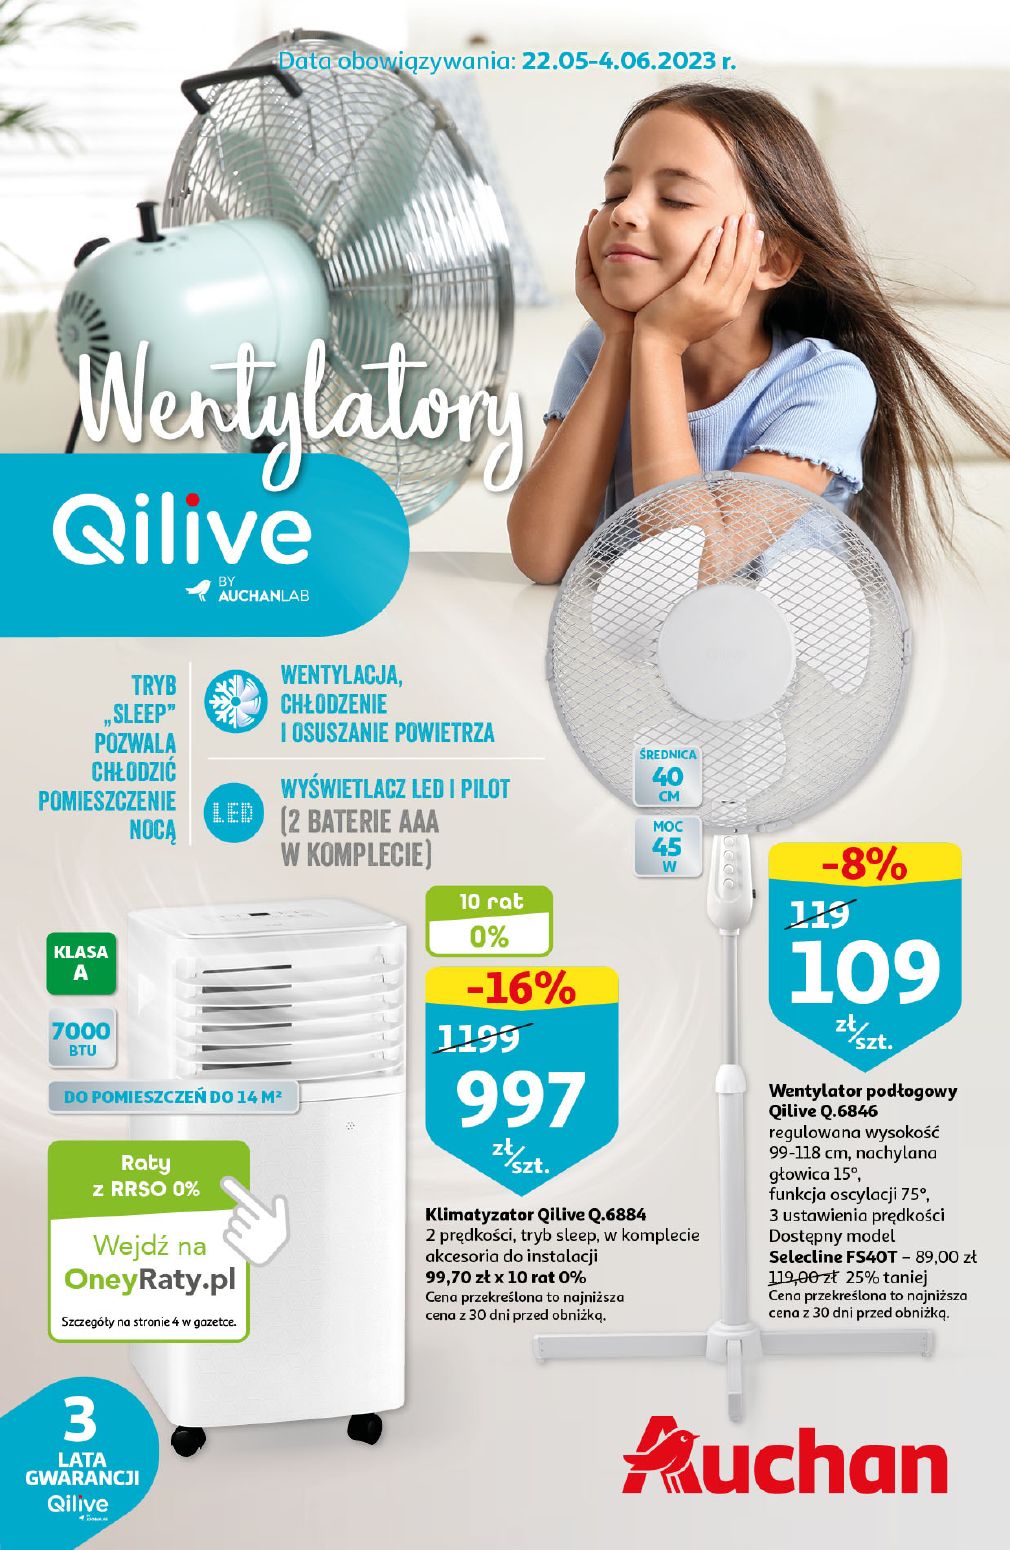 акційний каталог Auchan – Wentylatory Qilive by AUCHANLAB - Сторінка {{page}}